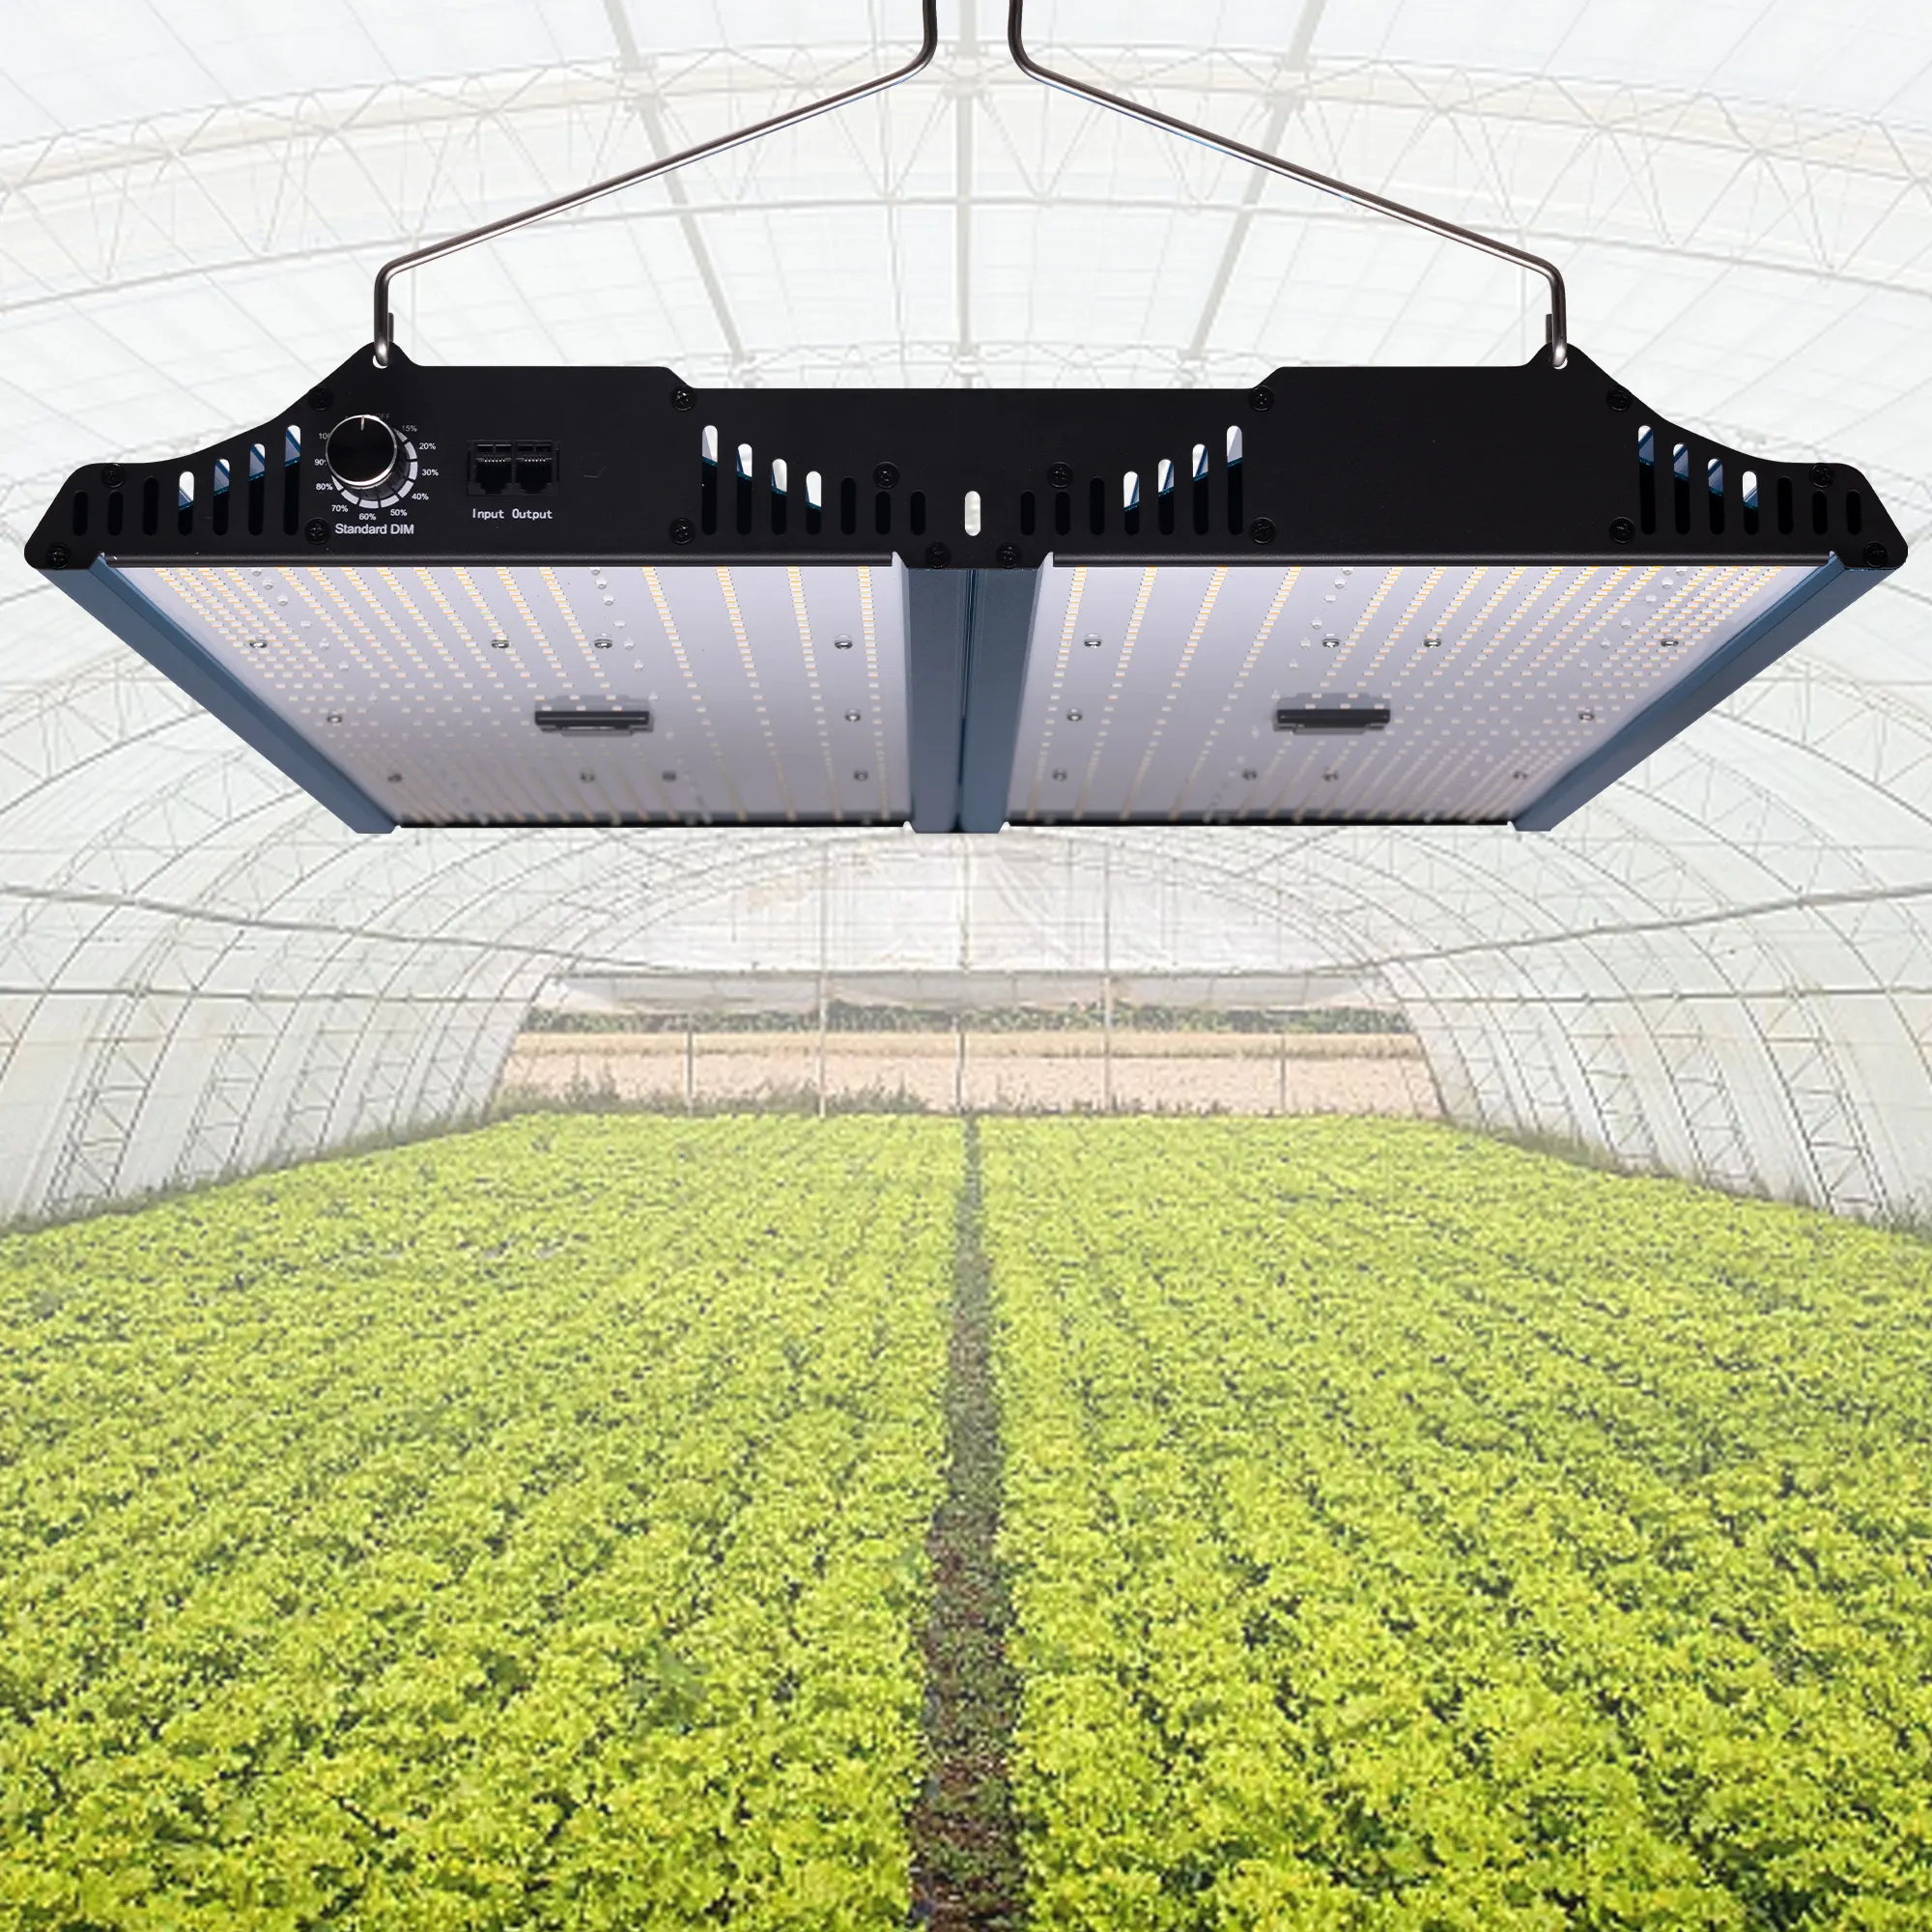 2023 New 450 Wát bảng ánh sáng LED quang phổ đầy đủ phát triển ánh sáng kế hoạch đèn hệ thống trong nhà nhà kính thủy canh thực vật phát triển Bảng điều khiển ánh sáng